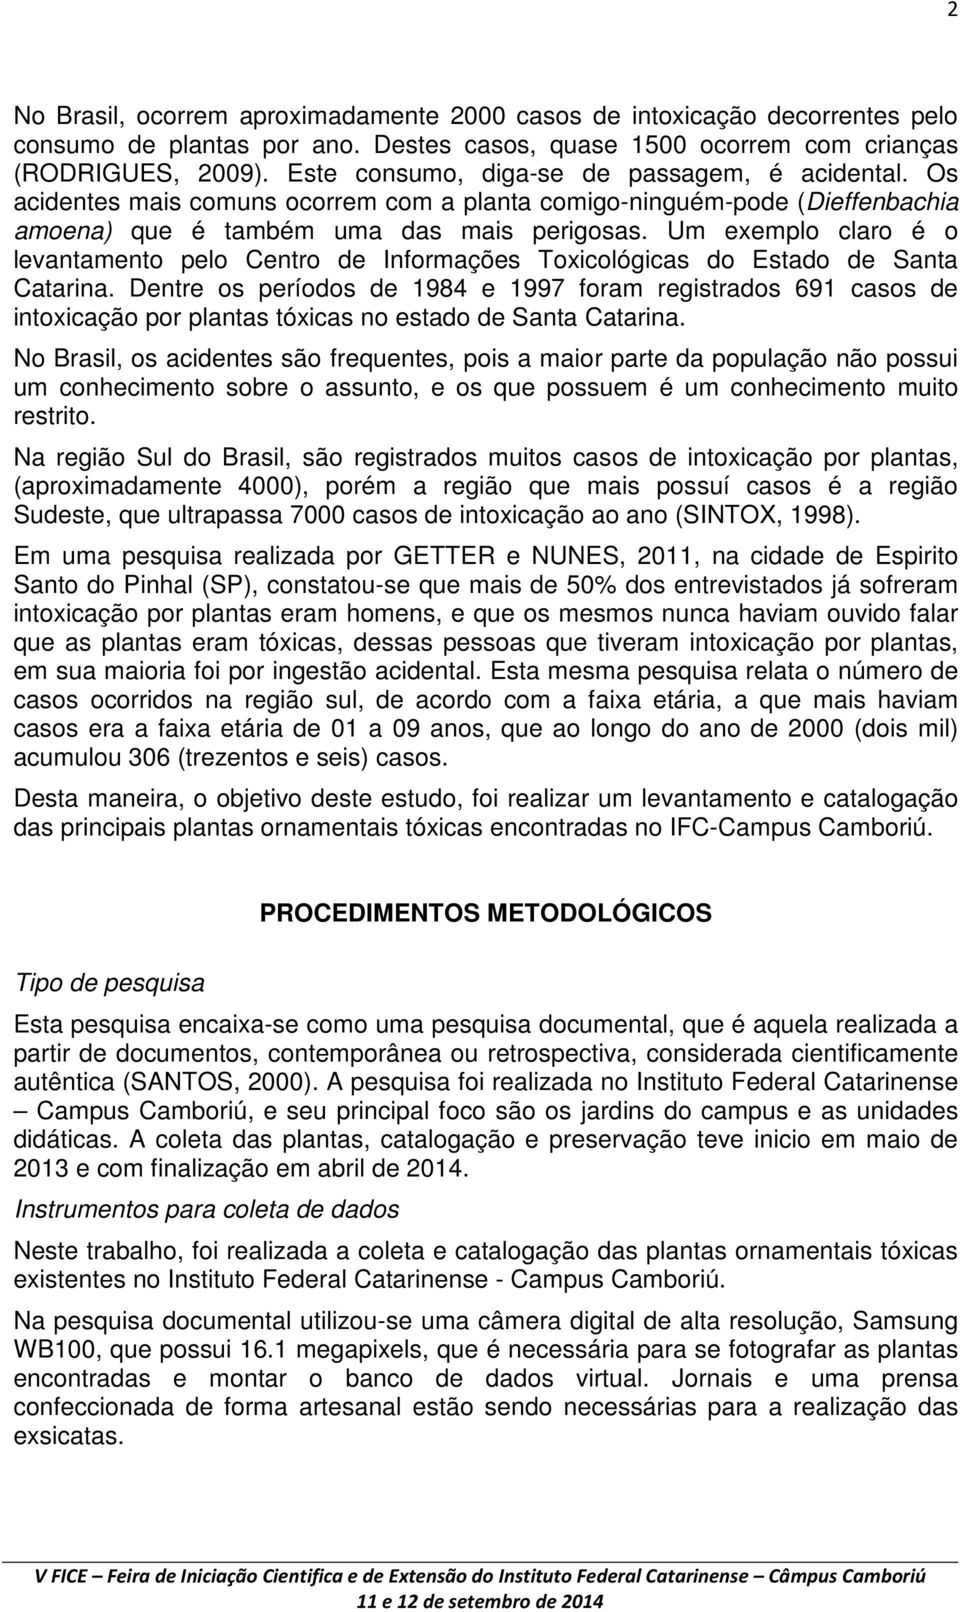 Um exemplo claro é o levantamento pelo Centro de Informações Toxicológicas do Estado de Santa Catarina.